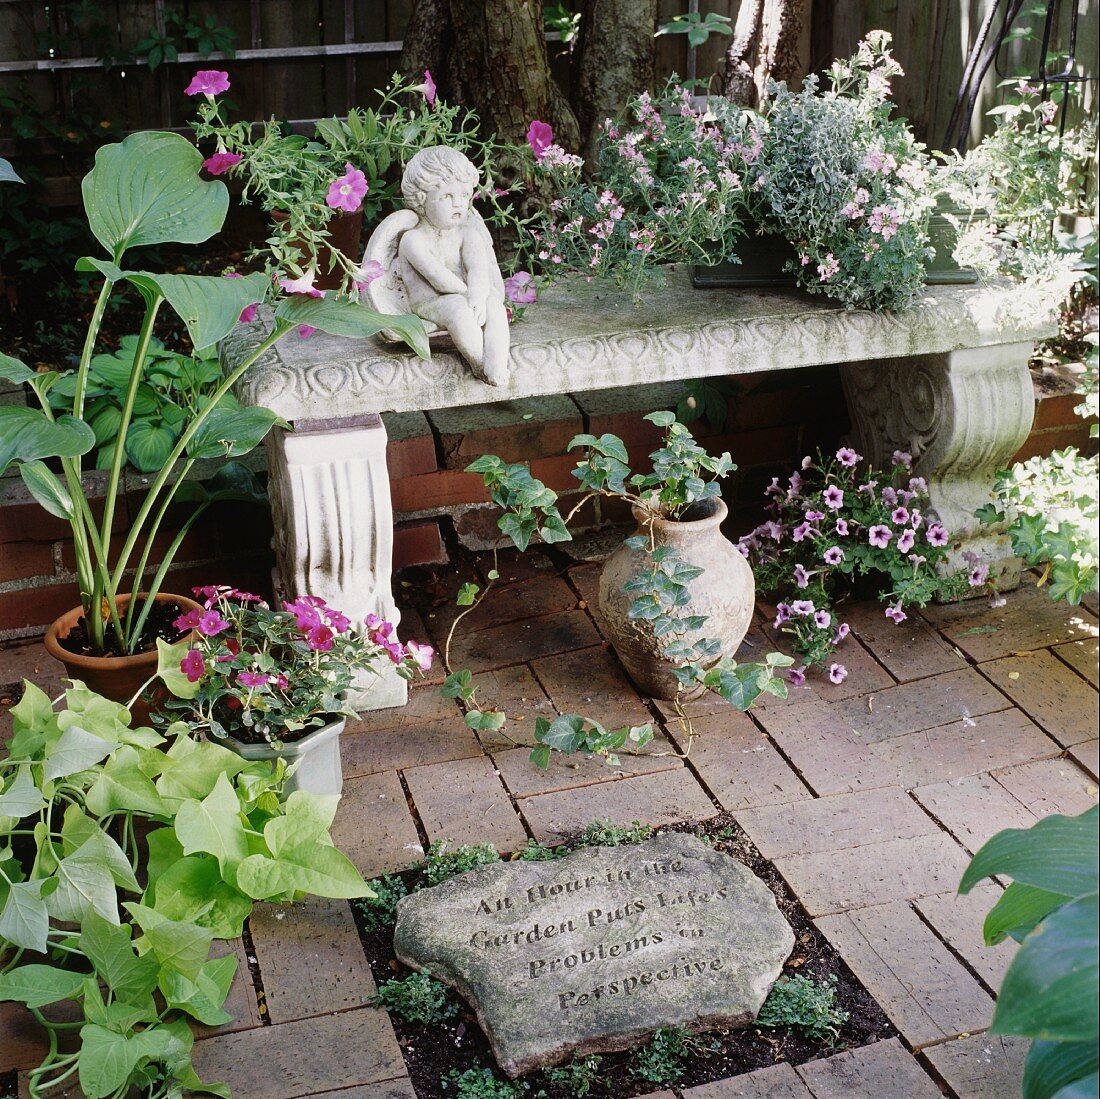 Dekorative Steinbank mit Blumentöpfen und einer Engelsfigur